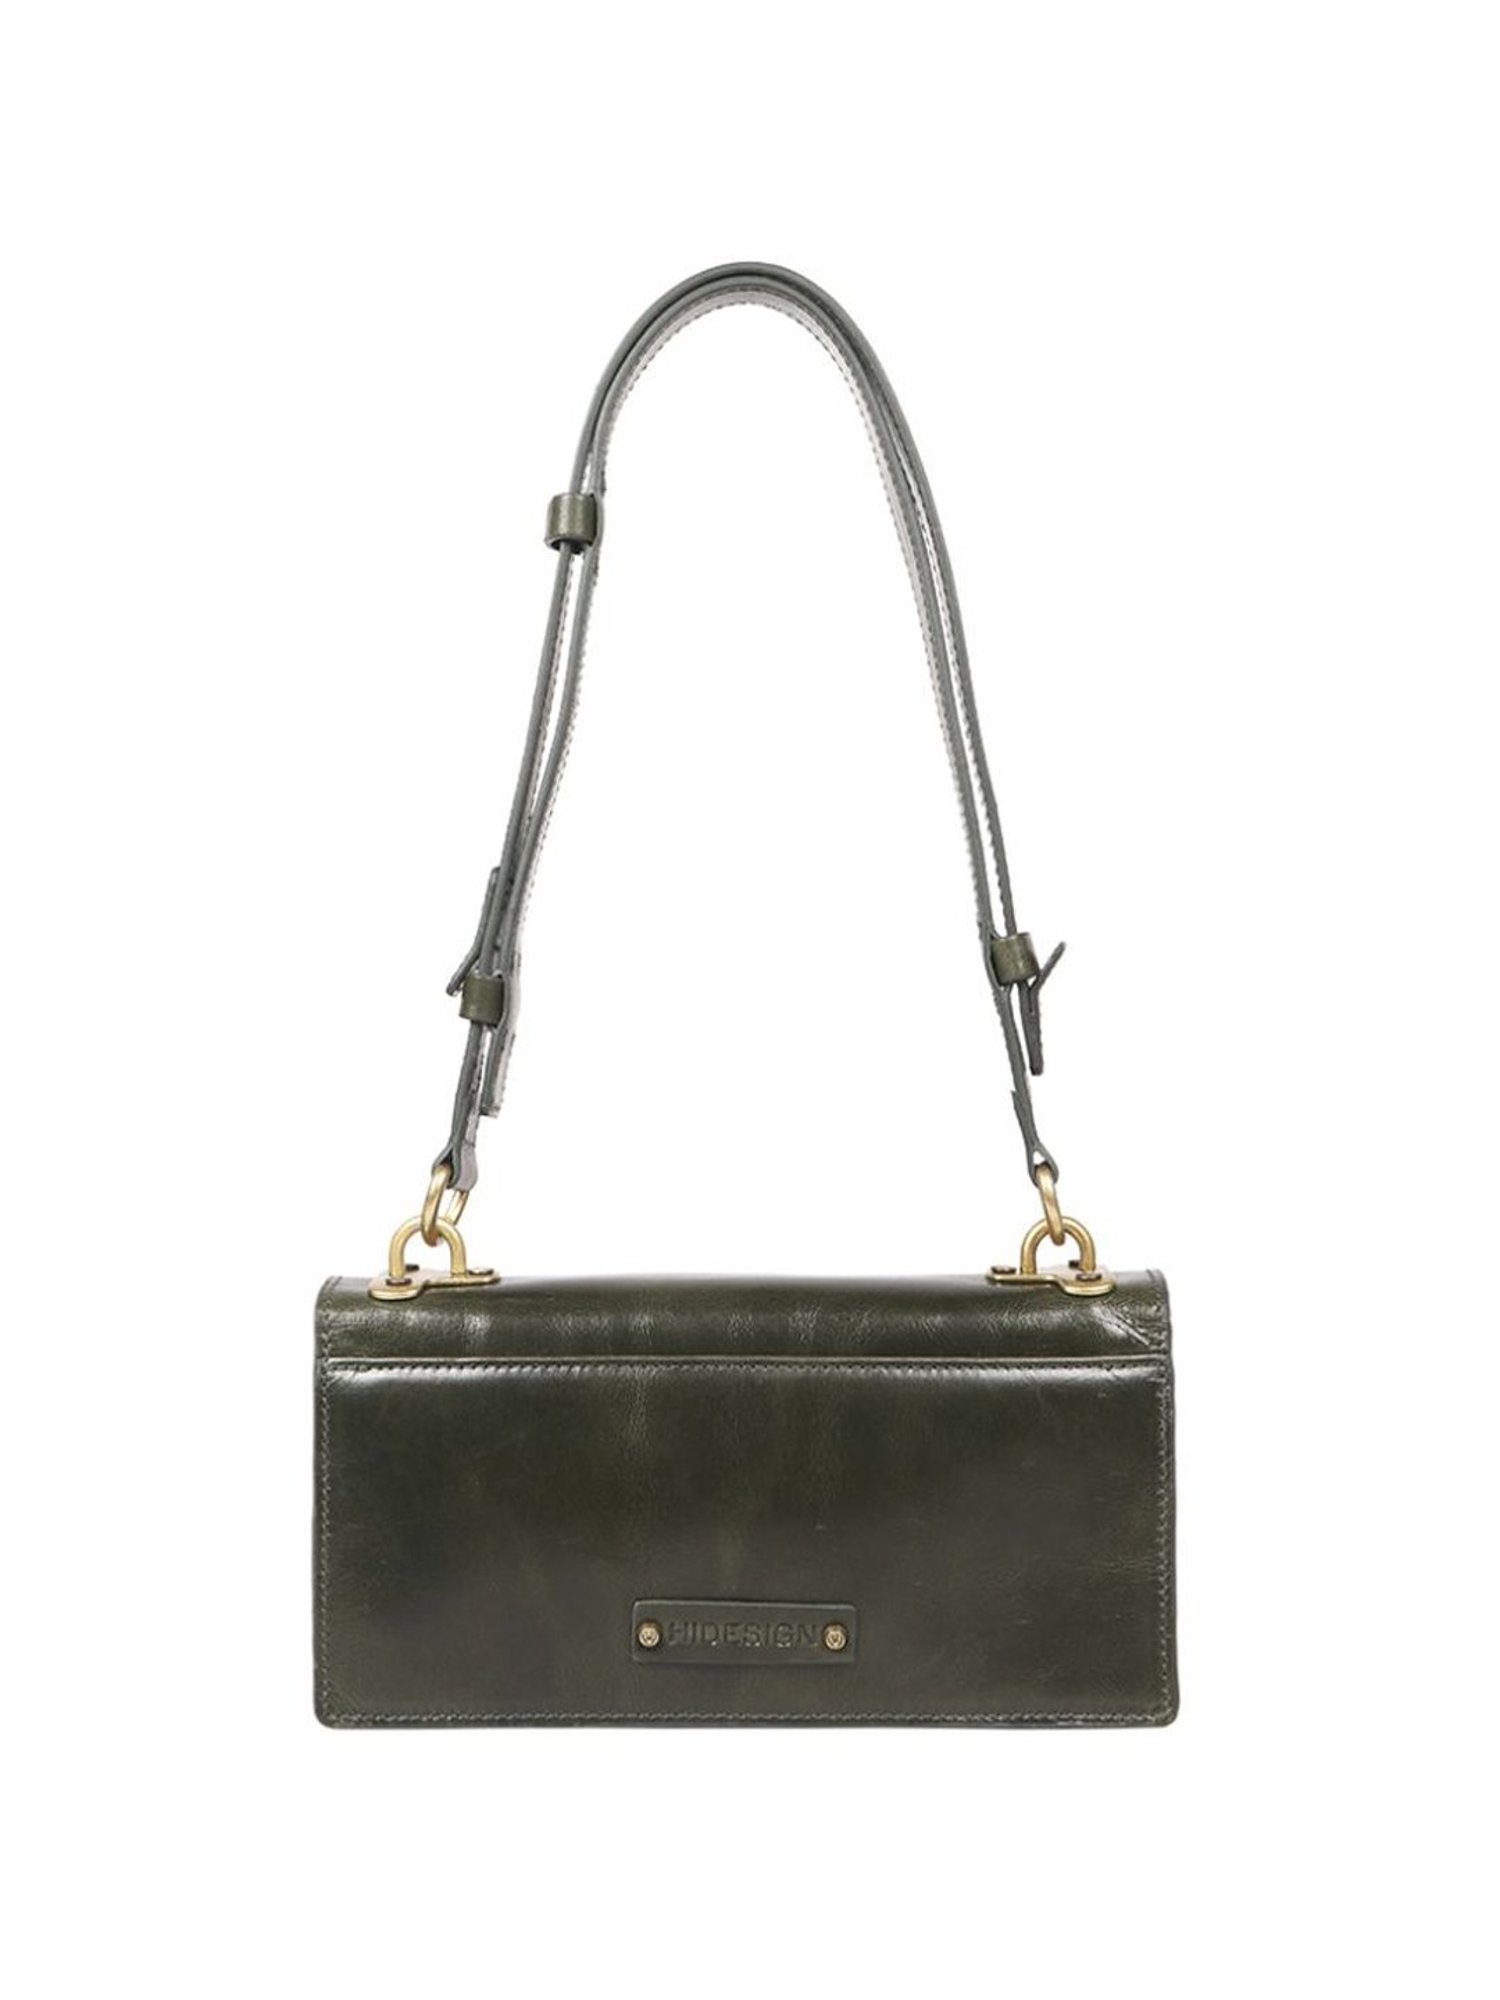 Handbags – Clothes Mentor Sandusky OH #307